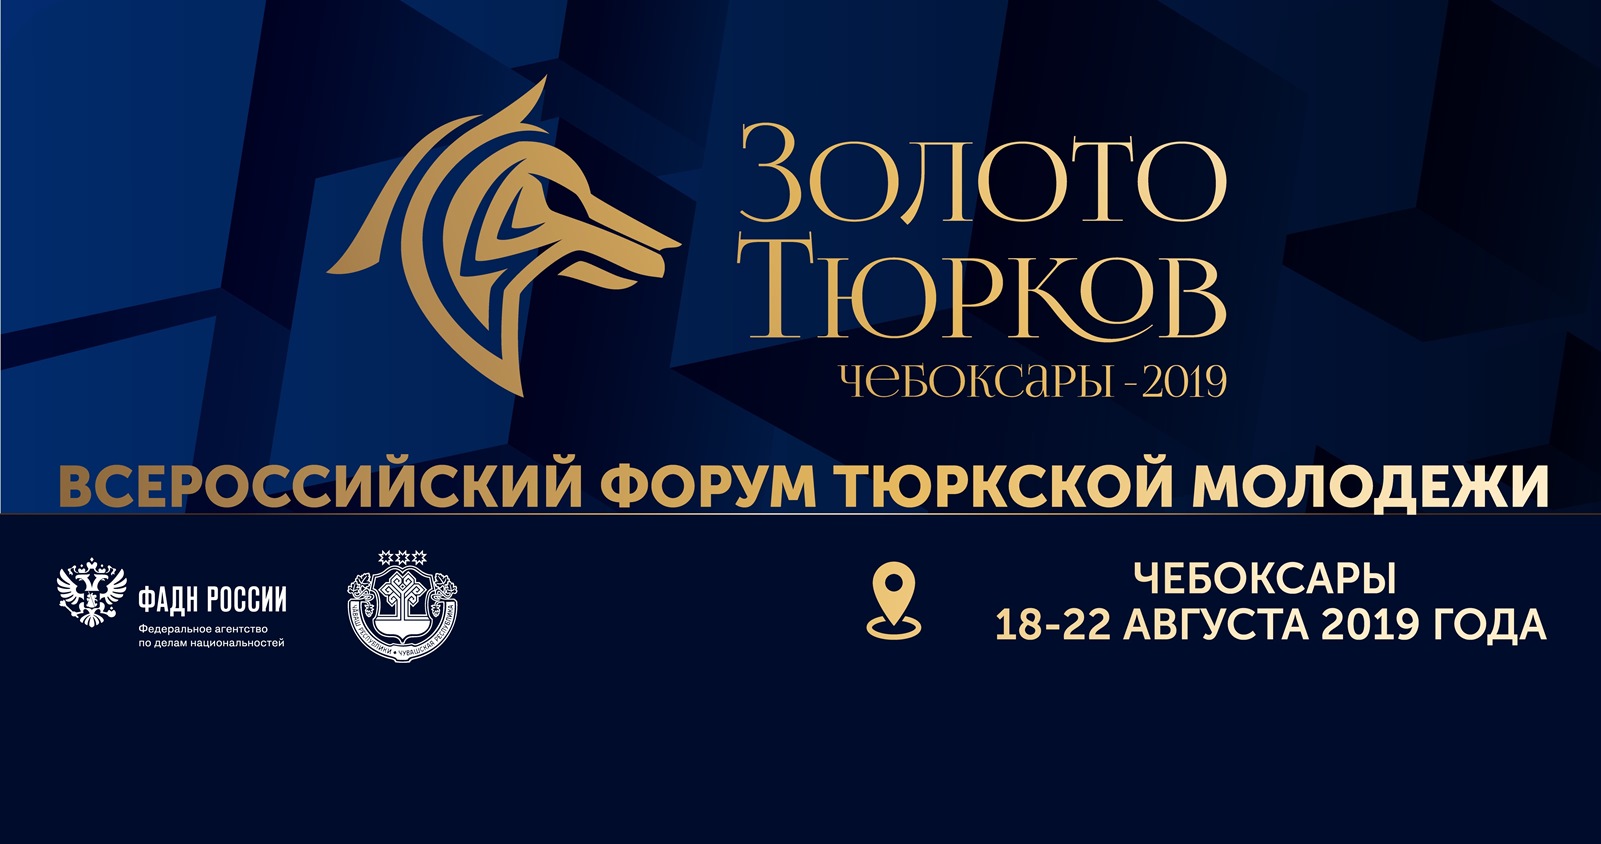 IV Всероссийский форум тюркской молодежи «Золото тюрков»